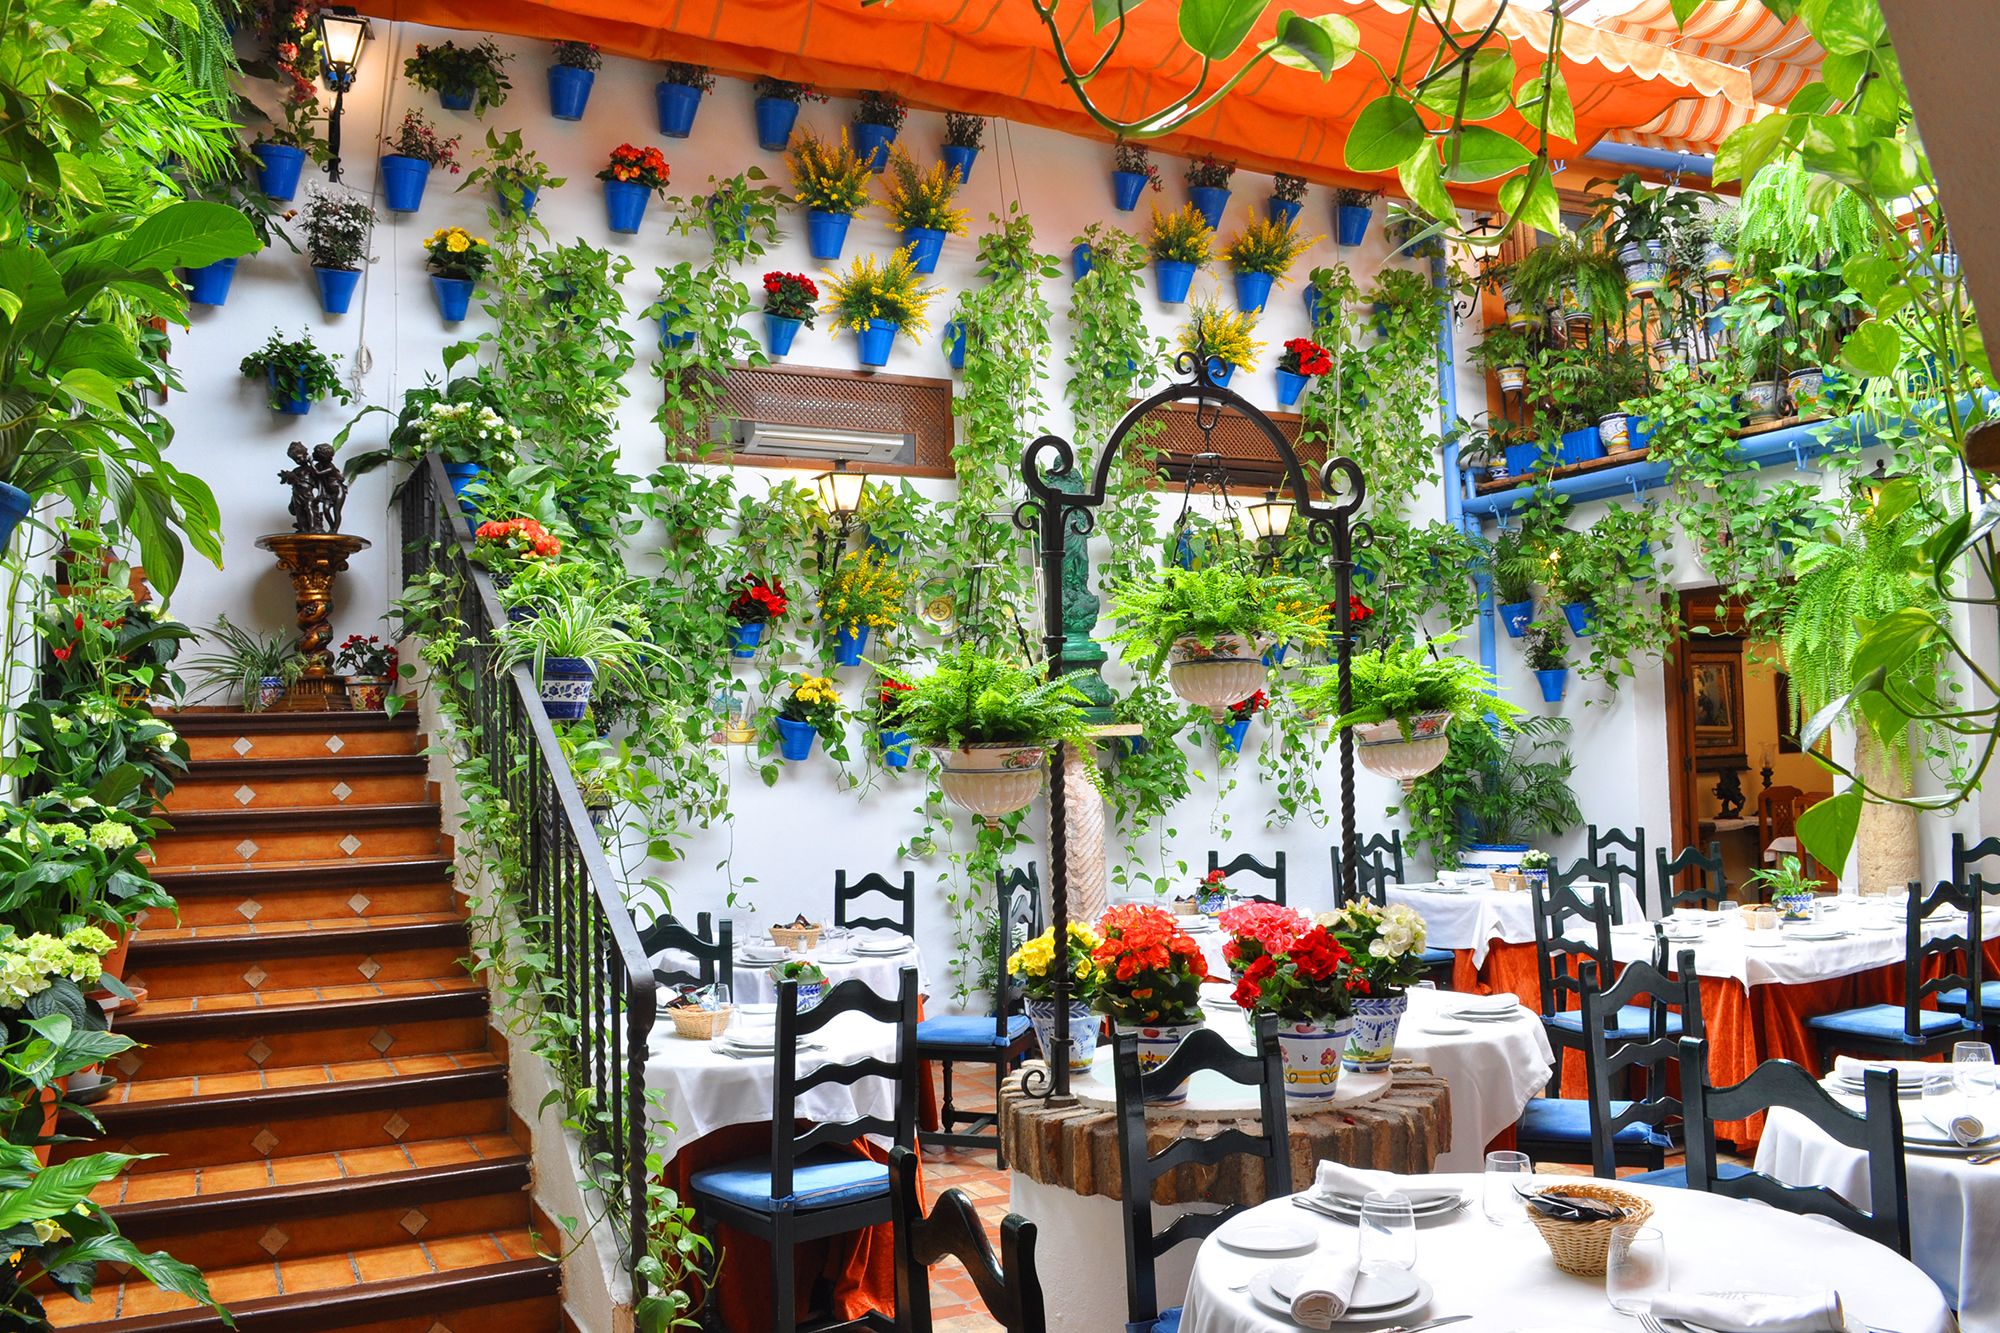 Descubre Córdoba a través de su gastronomía. Buscando empleo en la hostelería.